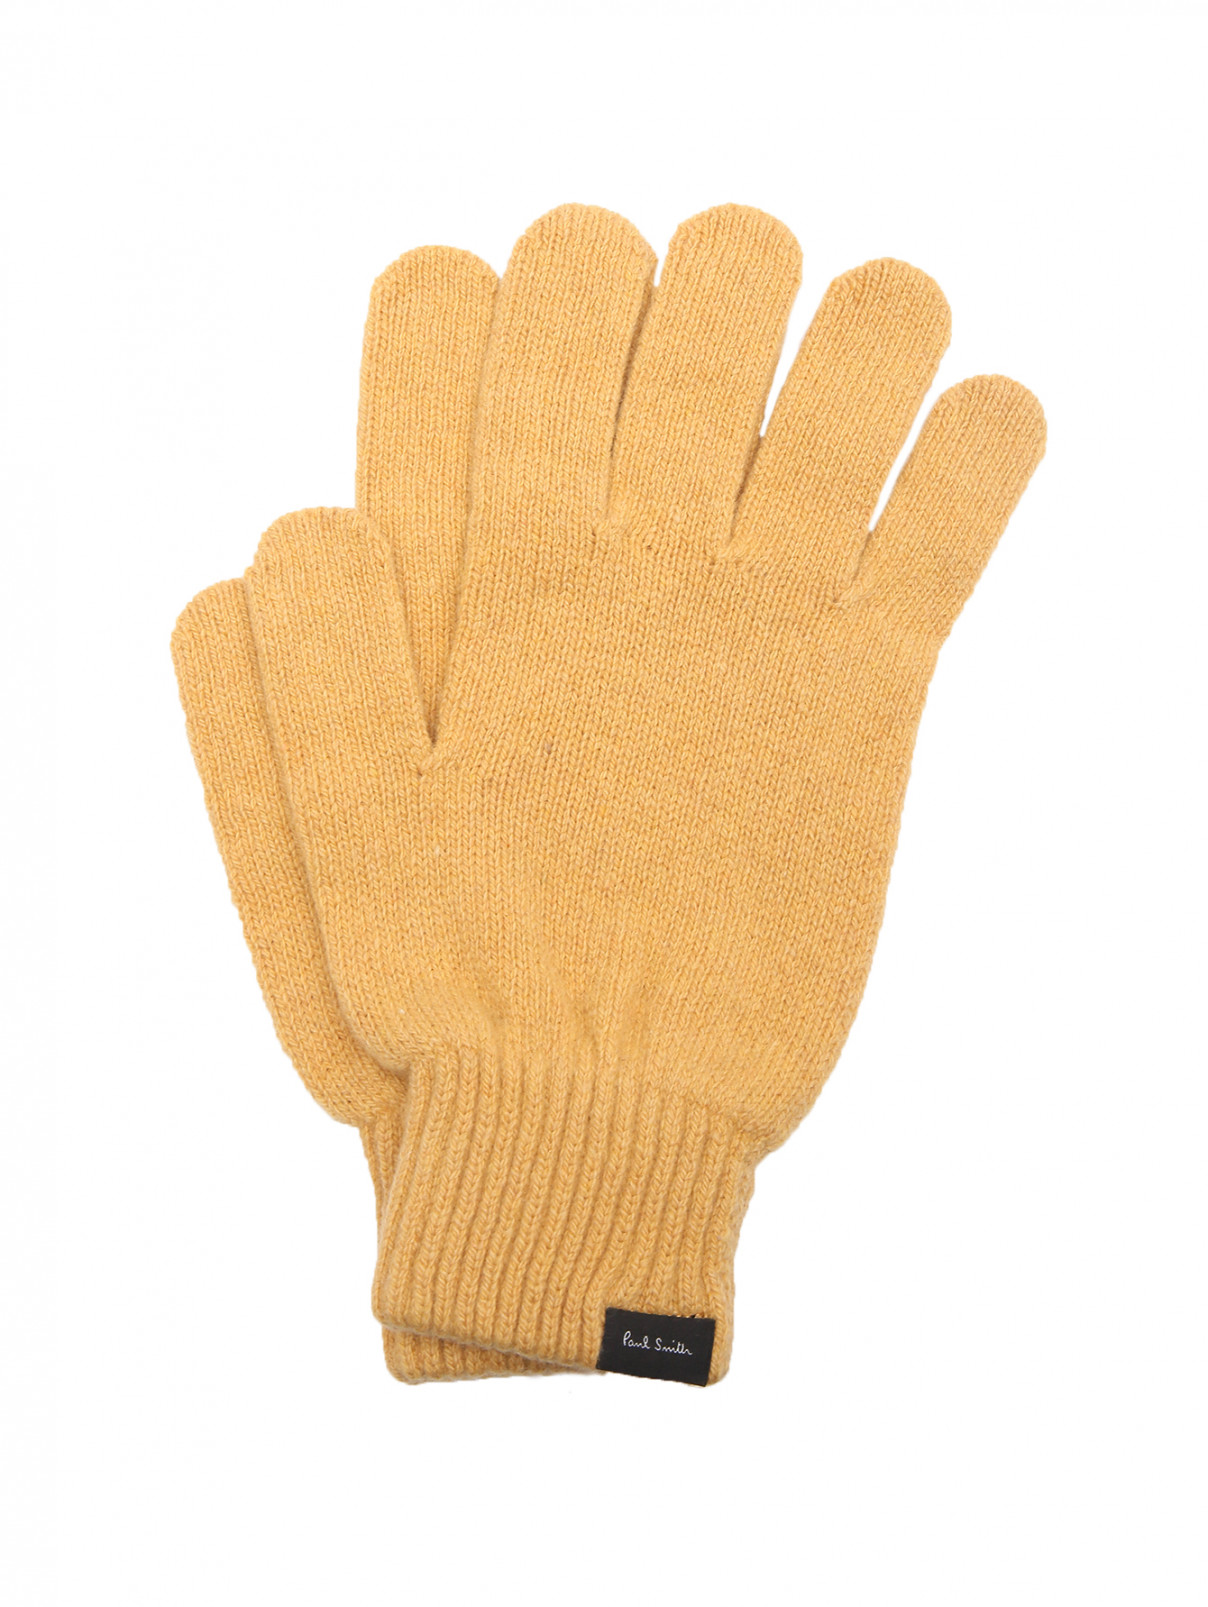 Трикотажные перчатки из кашемира Paul Smith  –  Общий вид  – Цвет:  Желтый